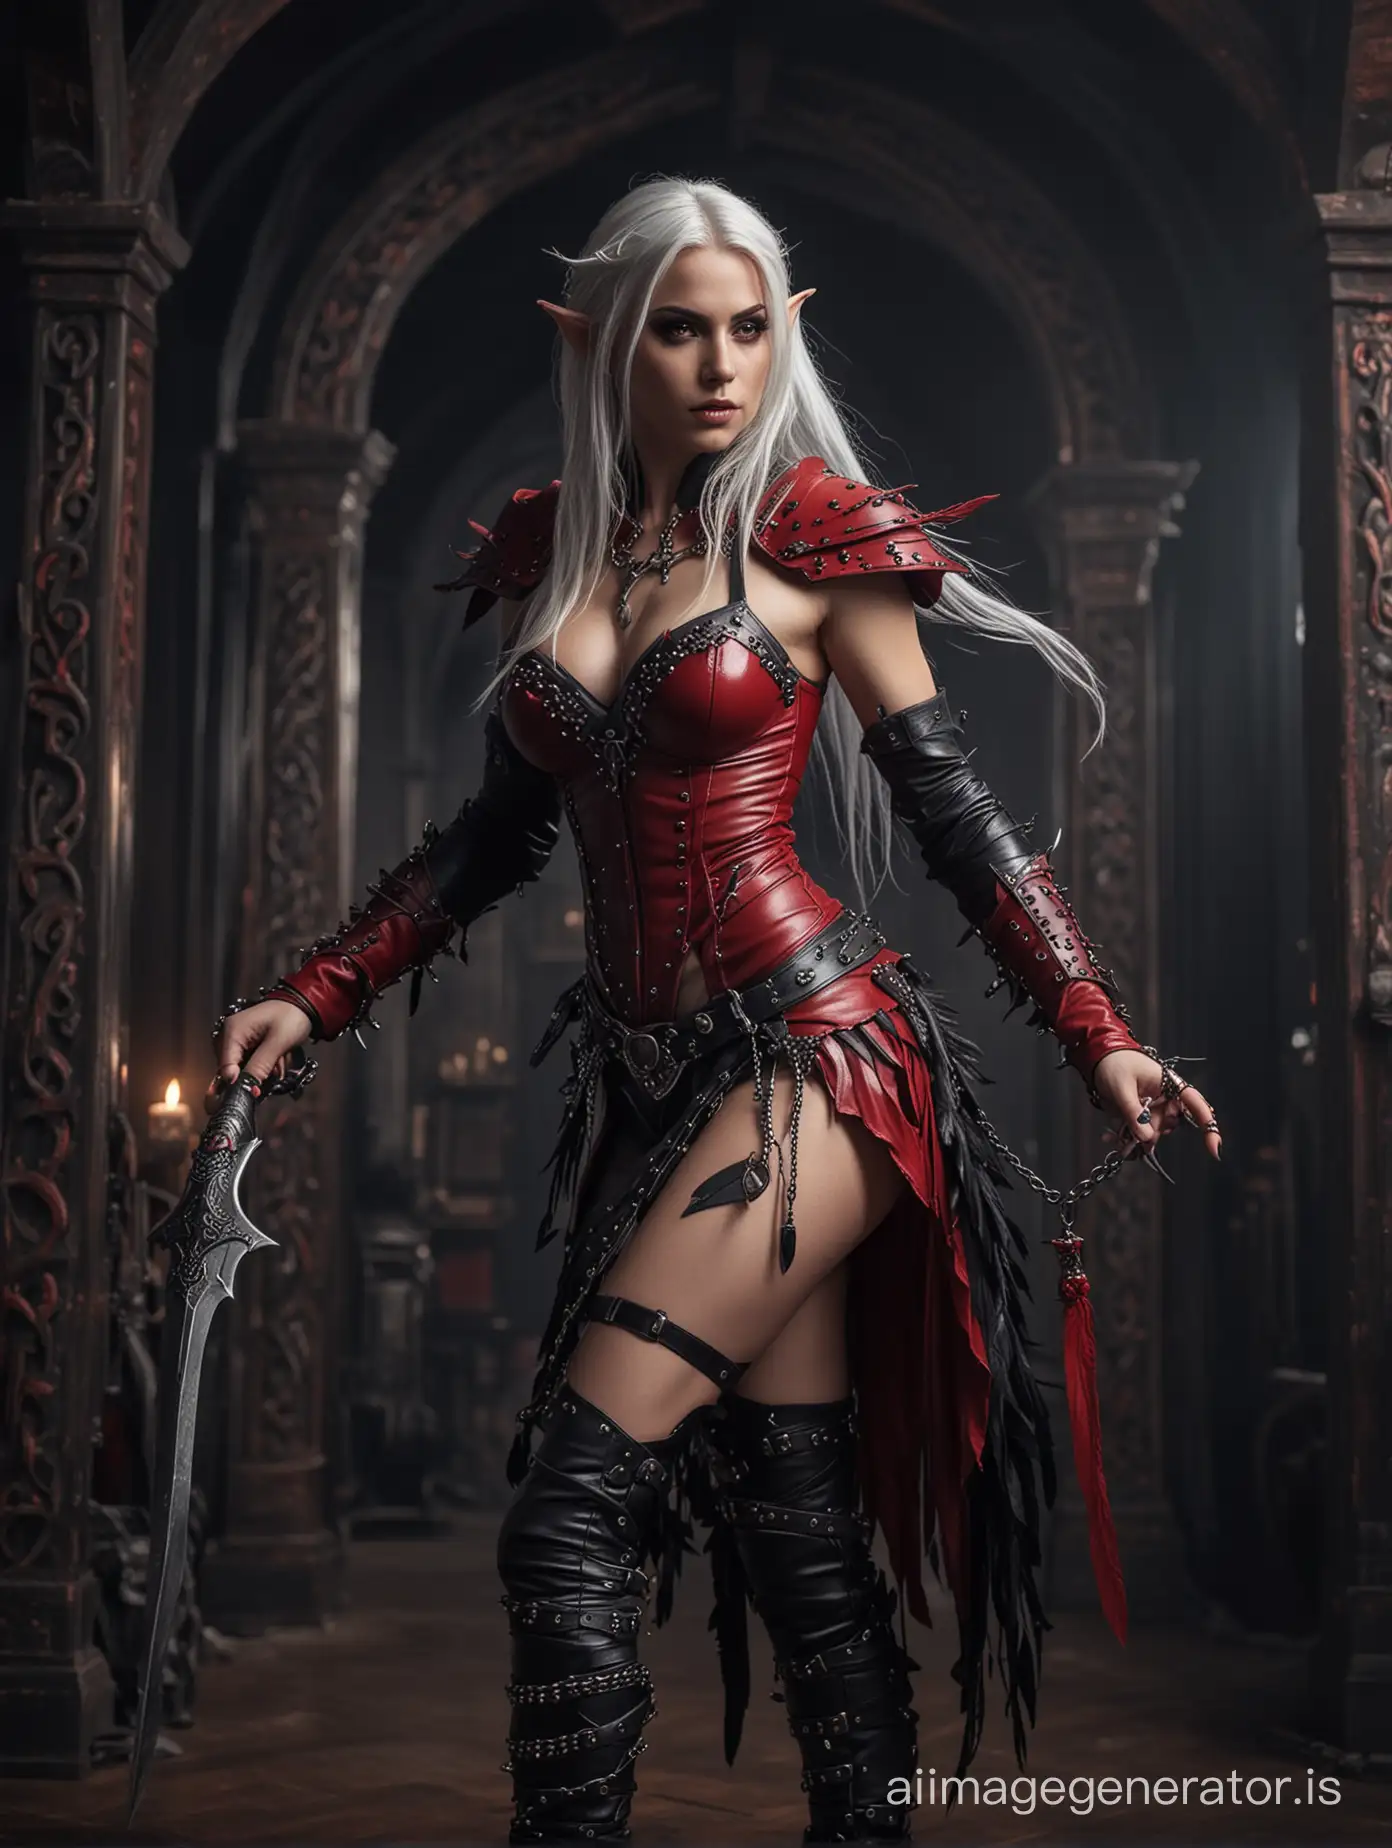 Seductive-WhiteHaired-Elf-Warrior-Queen-on-Her-Dark-Throne